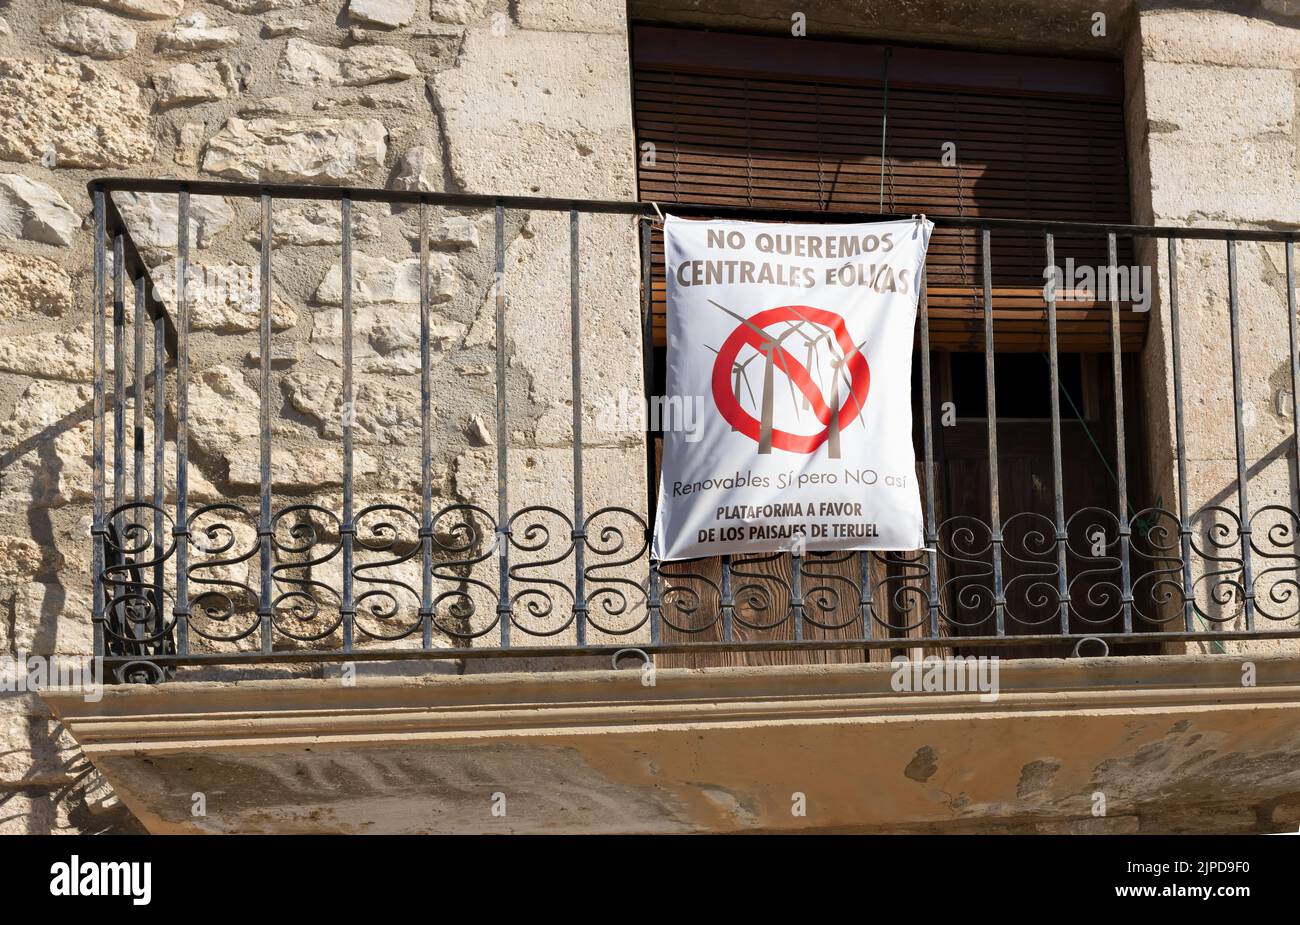 Fortanete, Teruel, Espagne 10-02-21, sur un balcon il y a une affiche protestant contre la gestion des centrales éoliennes, il lit en espagnol que nous ne voulons pas de wi Banque D'Images